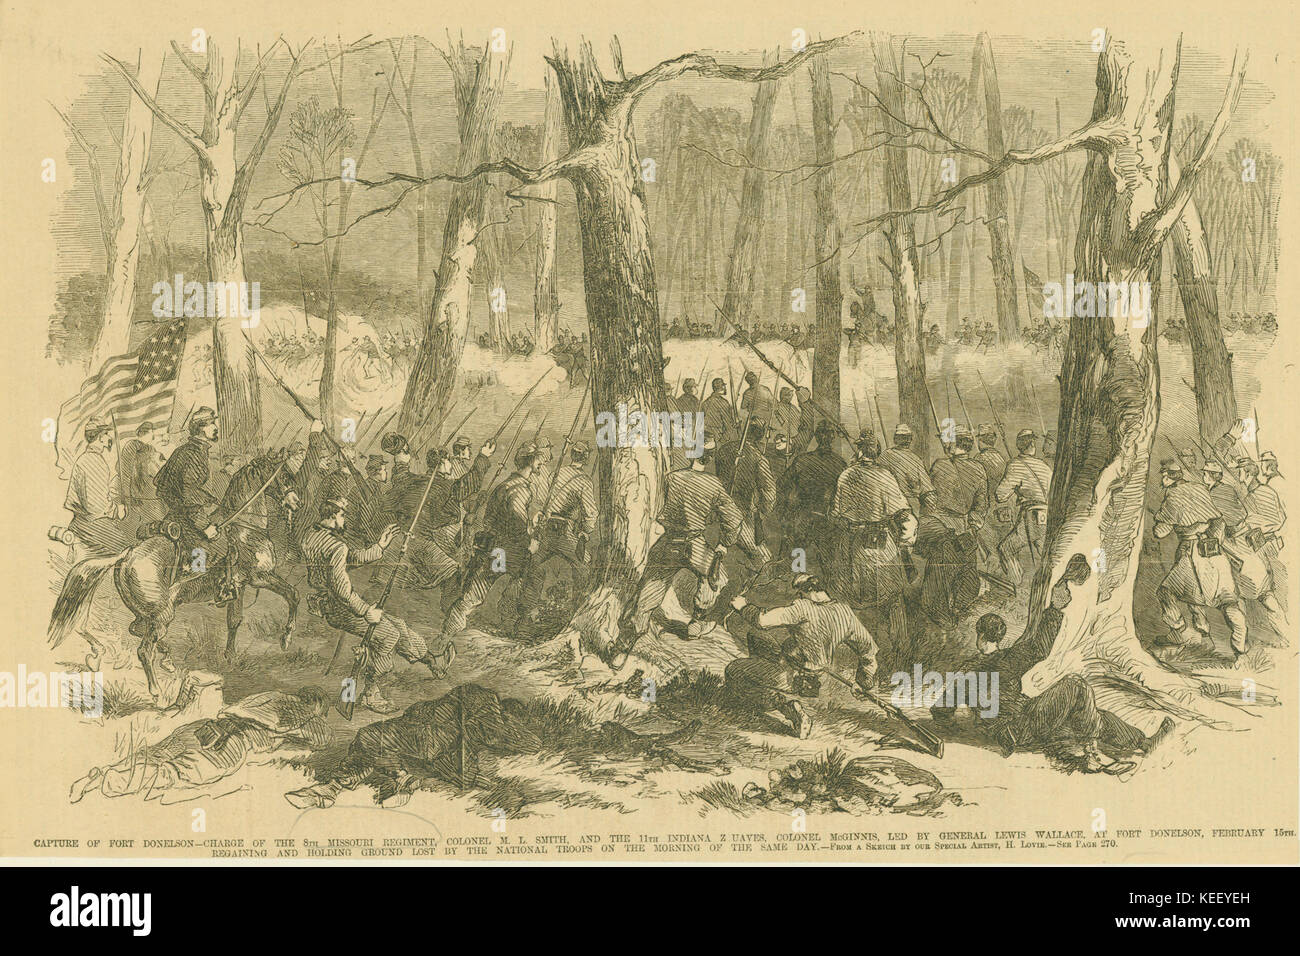 Capture du Fort Donelson. Responsable de la 8e Régiment du Missouri, par le colonel M.L. Smith, et l'Indiana 11 Zuaves, le Colonel McGinnis, dirigé par le général Lewis Wallace, à Fort Donelson, 15 février. Banque D'Images